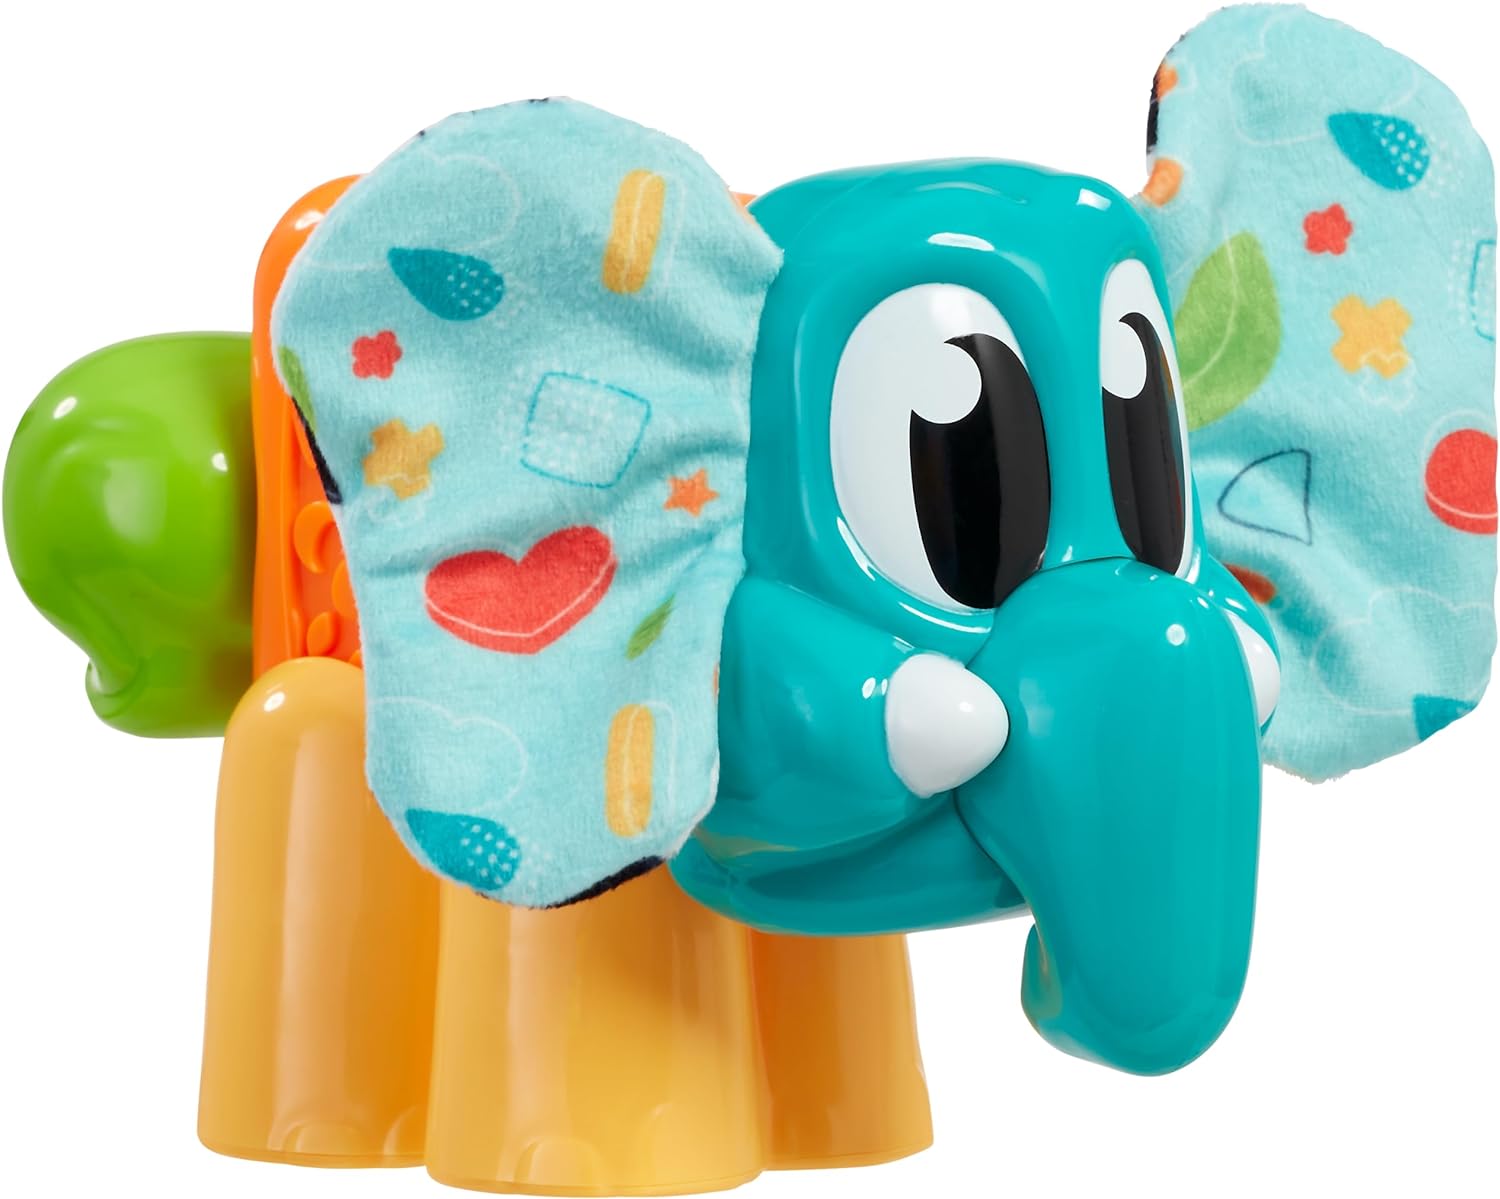 Modimi Ellie The Elephant Sensory Toy